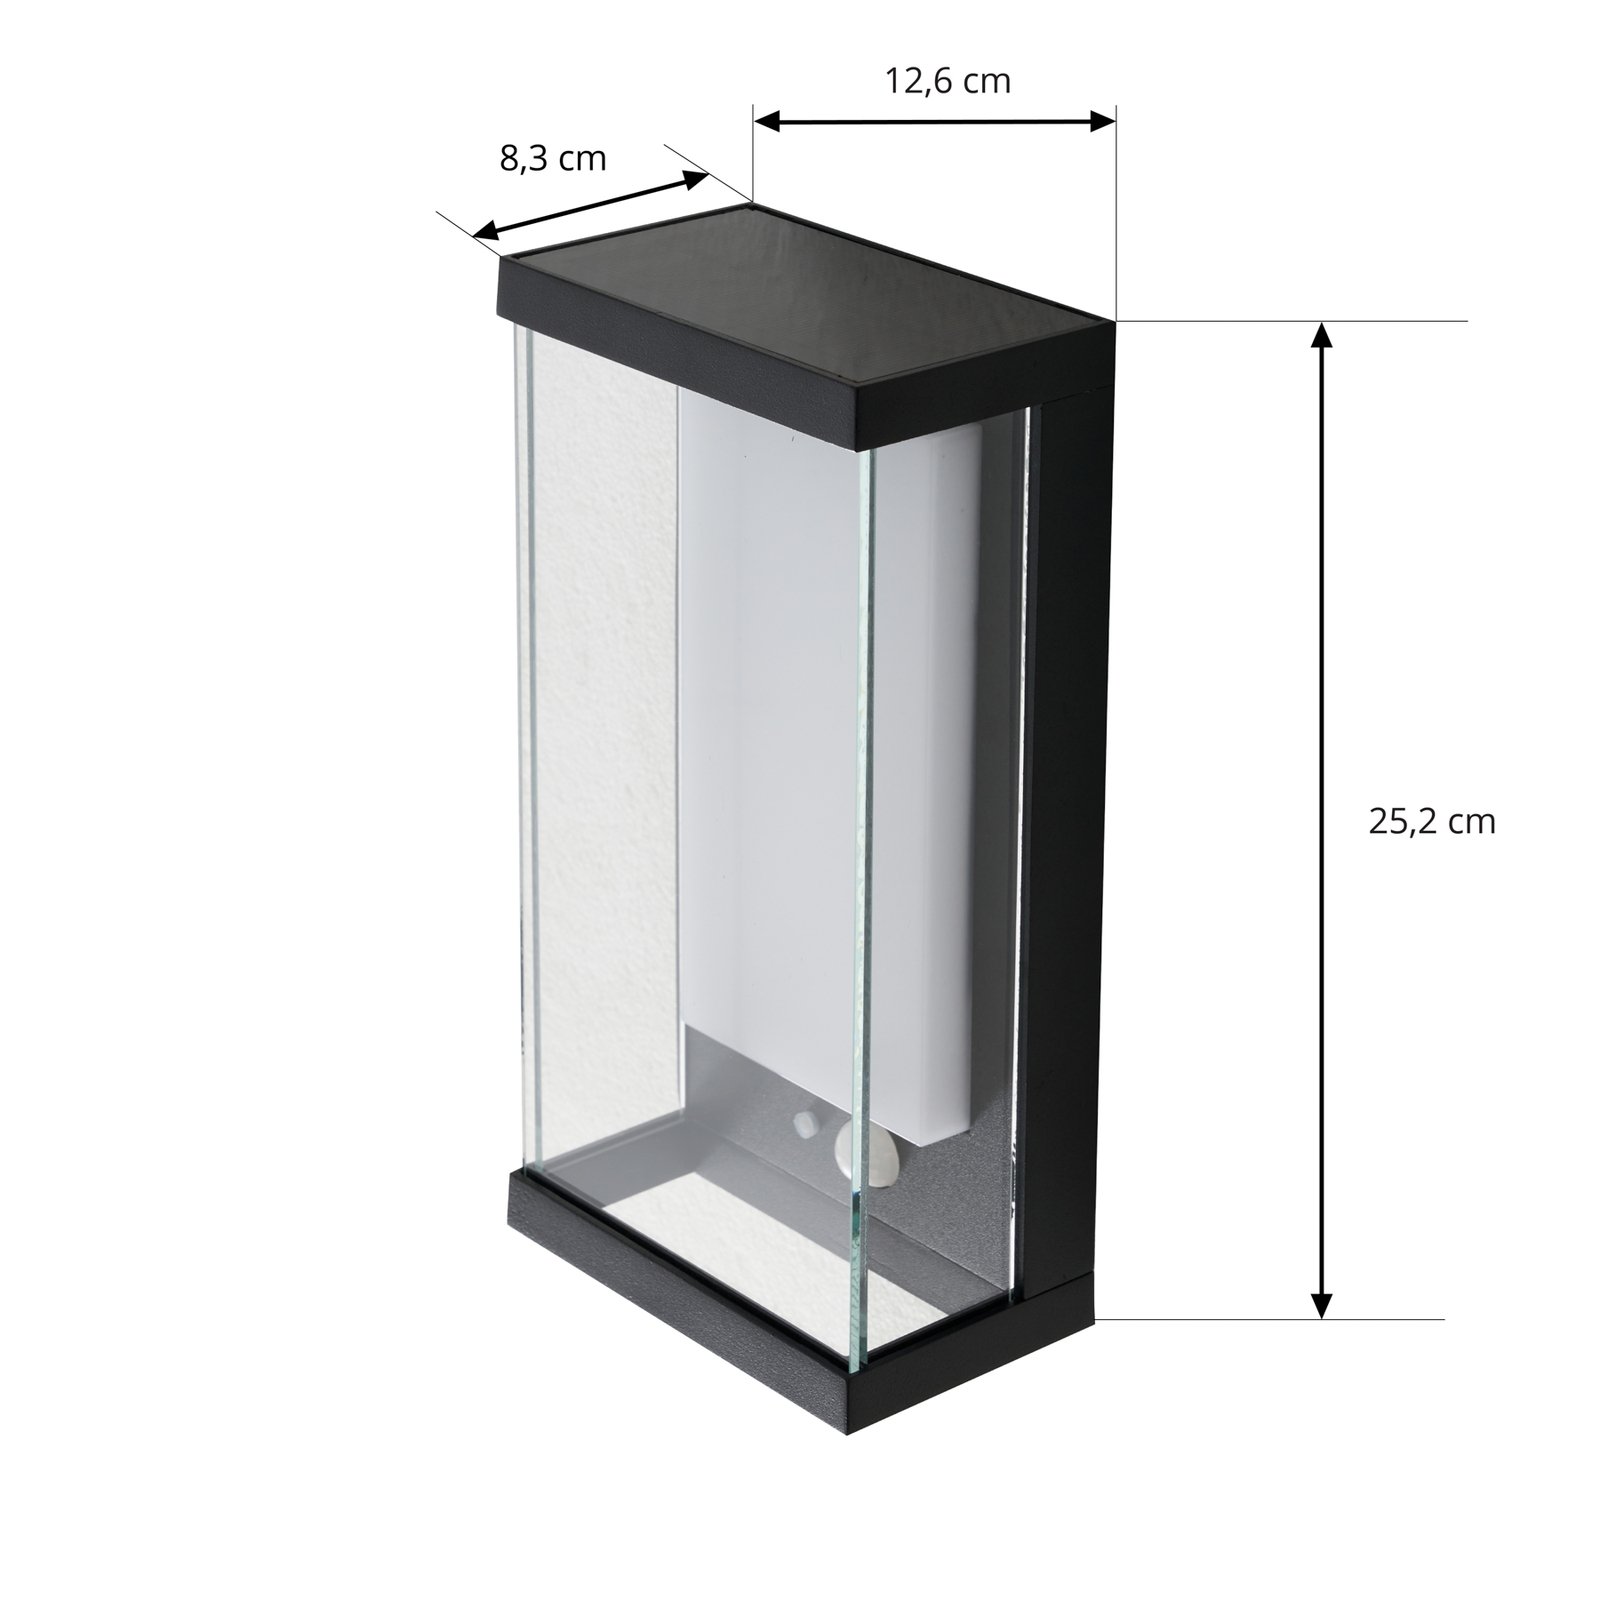 Lucande LED solcelledrevet utendørs vegglampe Dava, høyde 25,2 cm, sensor